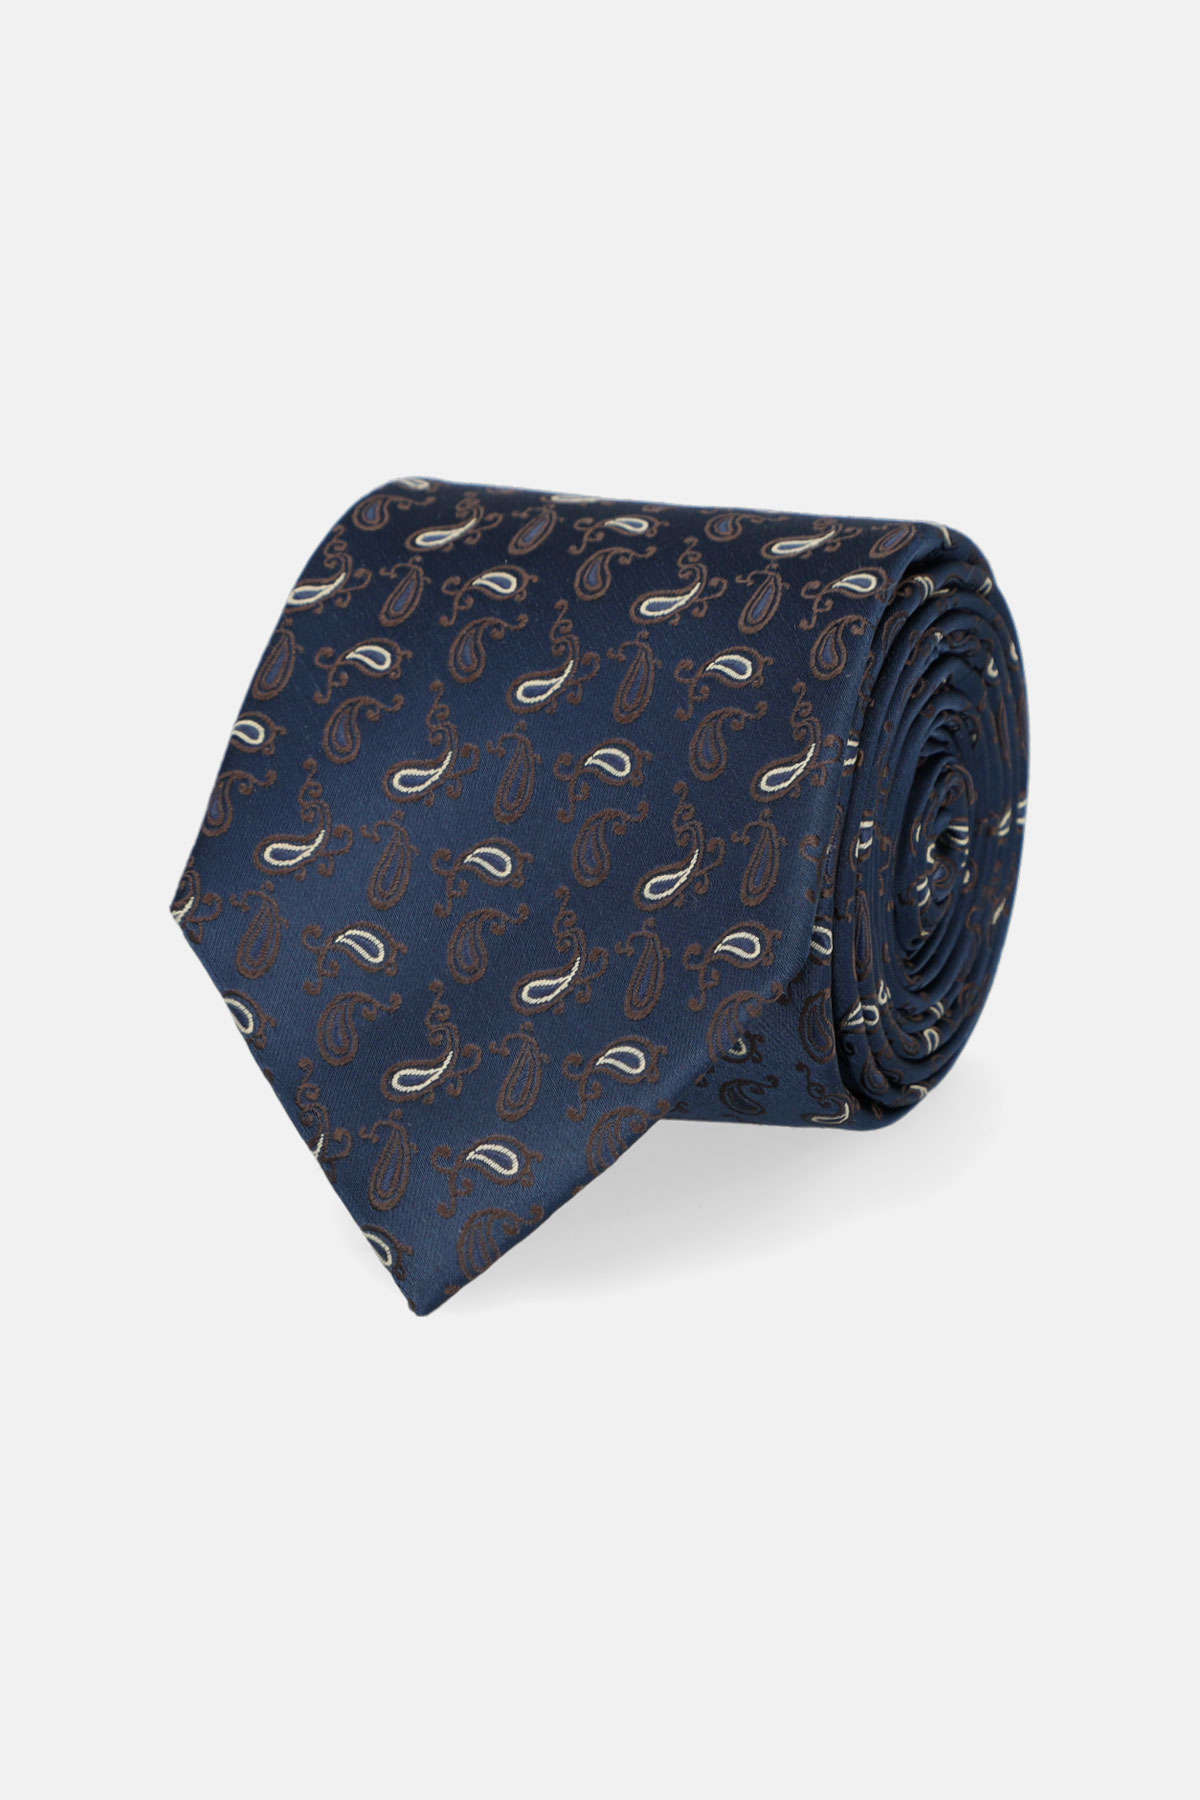 Krawat Granatowy Paisley rozmiar